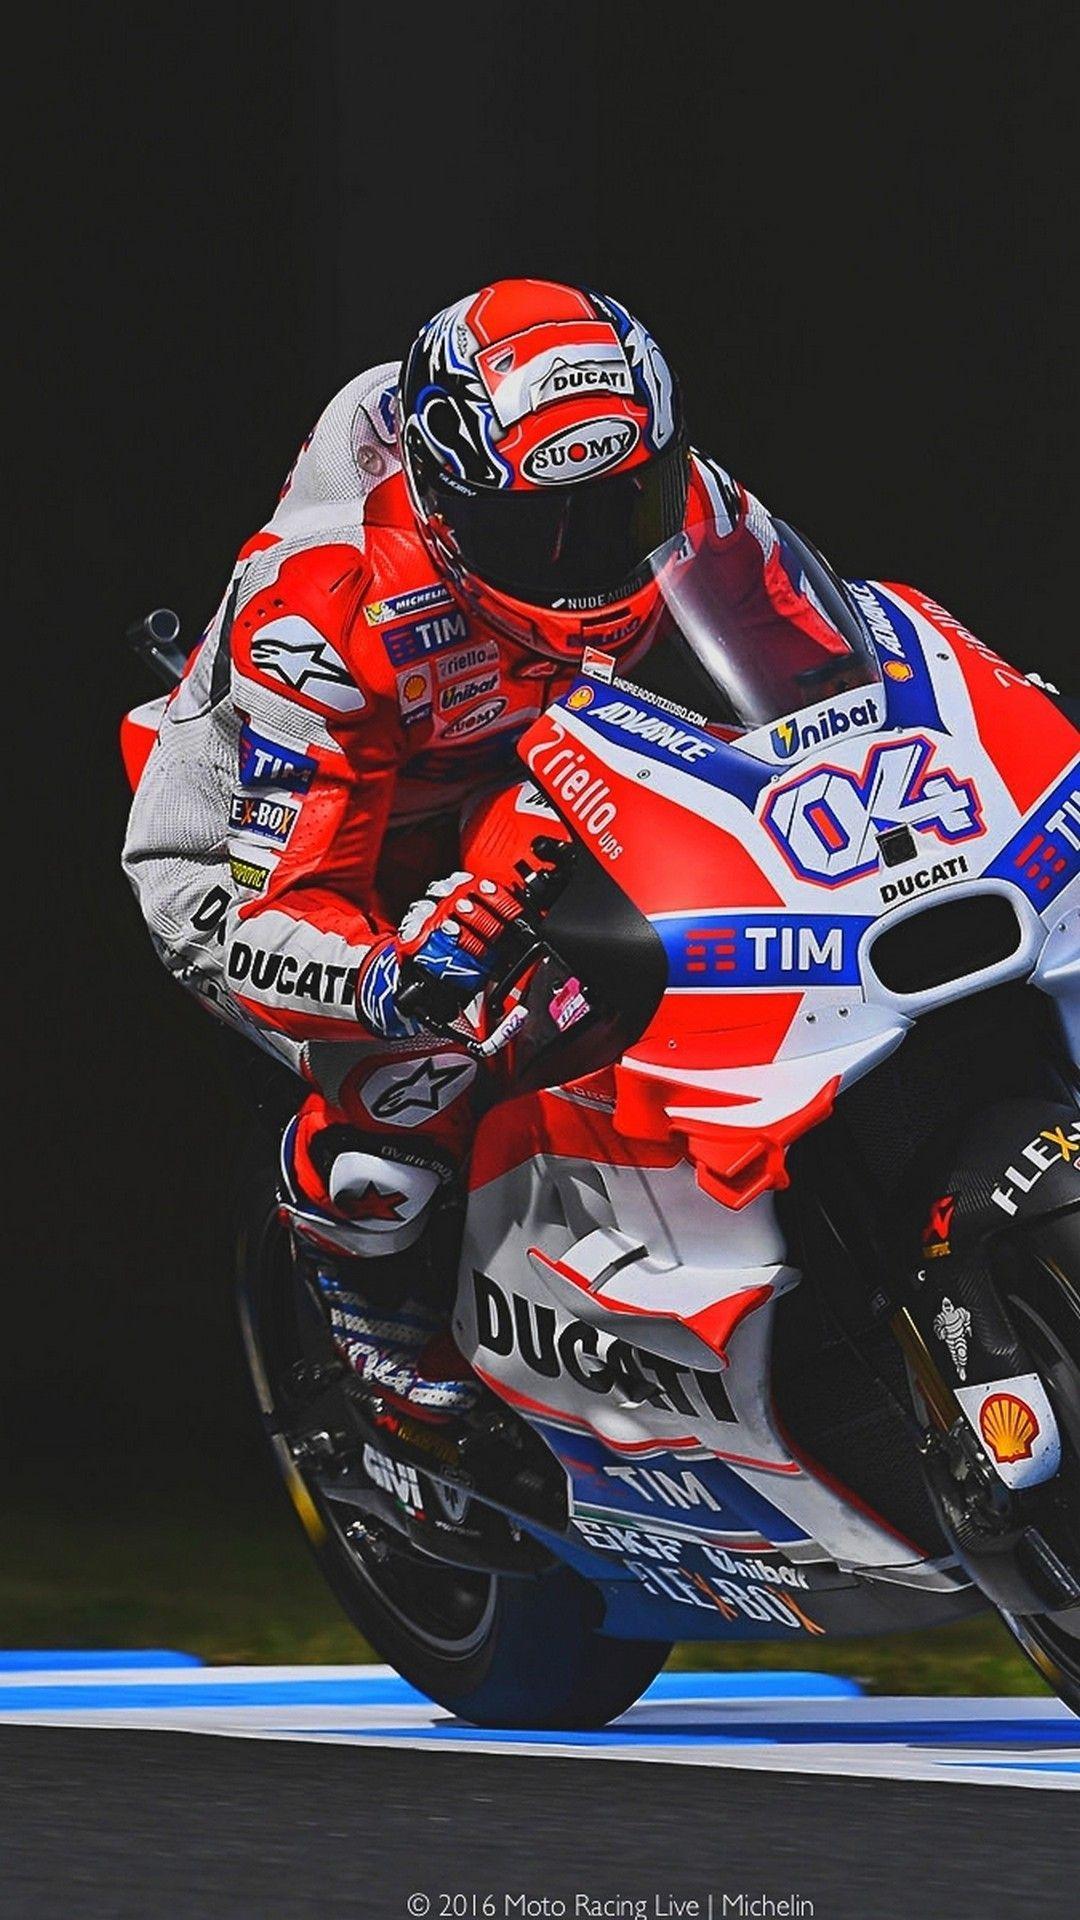 Ducati MotoGP Wallpapers - Top Free Ducati MotoGP Backgrounds